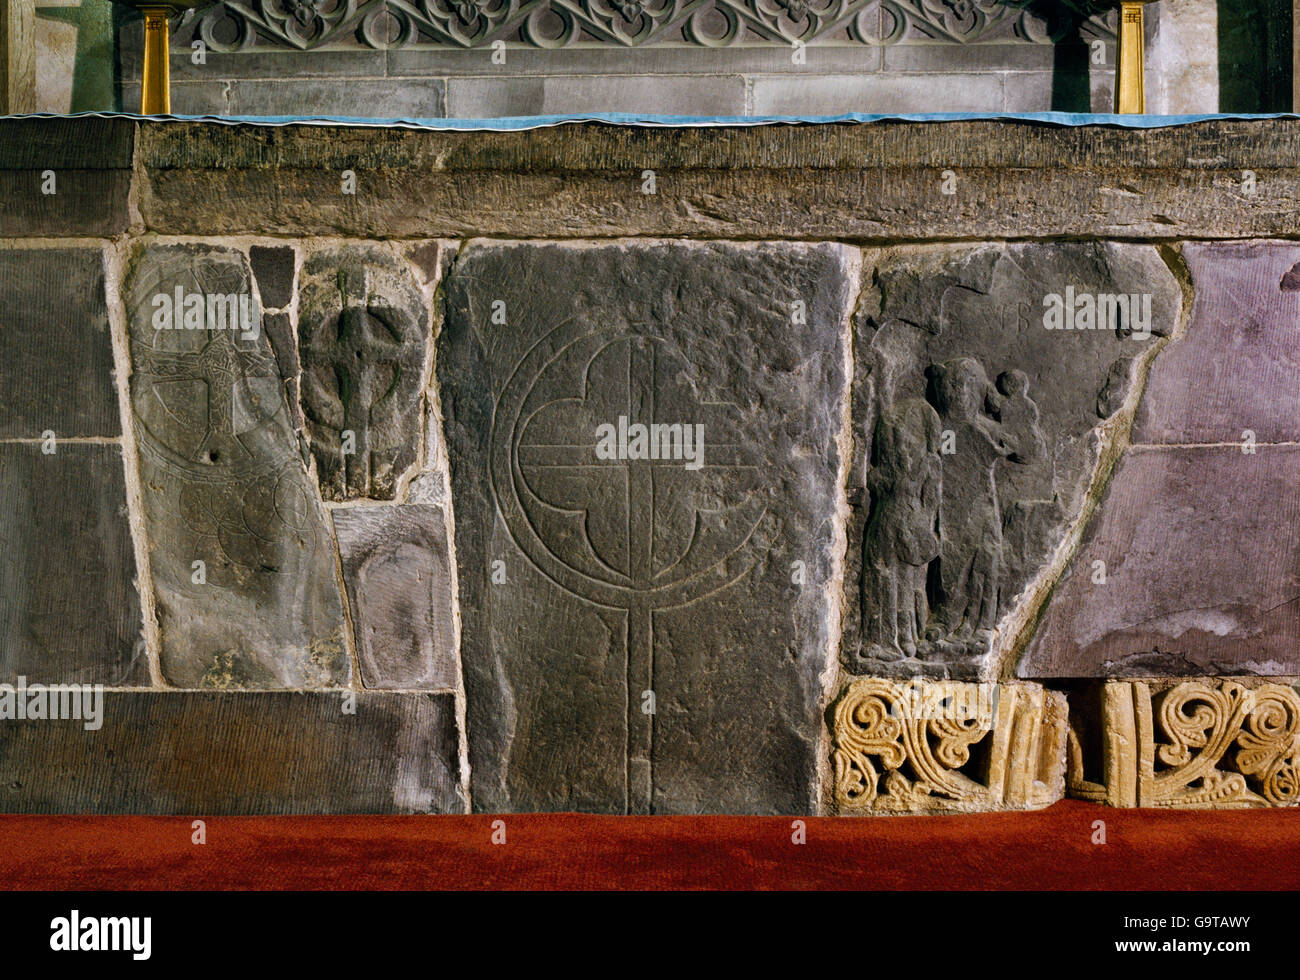 Cité médiévale de pierres sculptées dans l'autel de la Sainte Chapelle de la Trinité dans la Cathédrale de St David's, Pembrokeshire. Banque D'Images